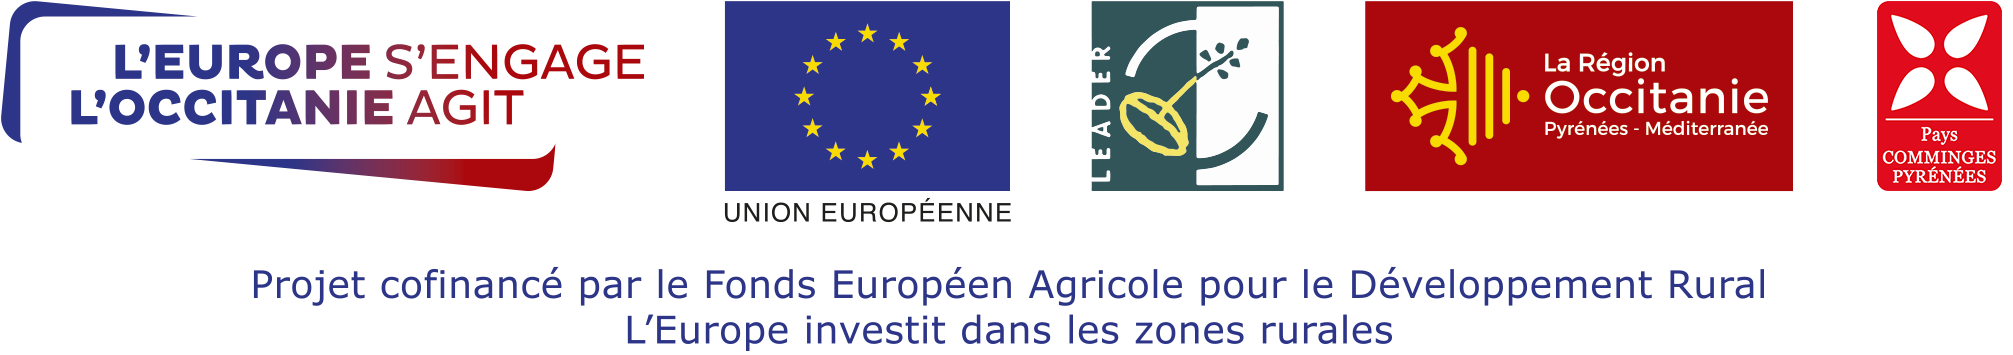 Projet cofinancé par le Fonds Européen Agricole pour le Développement Rural